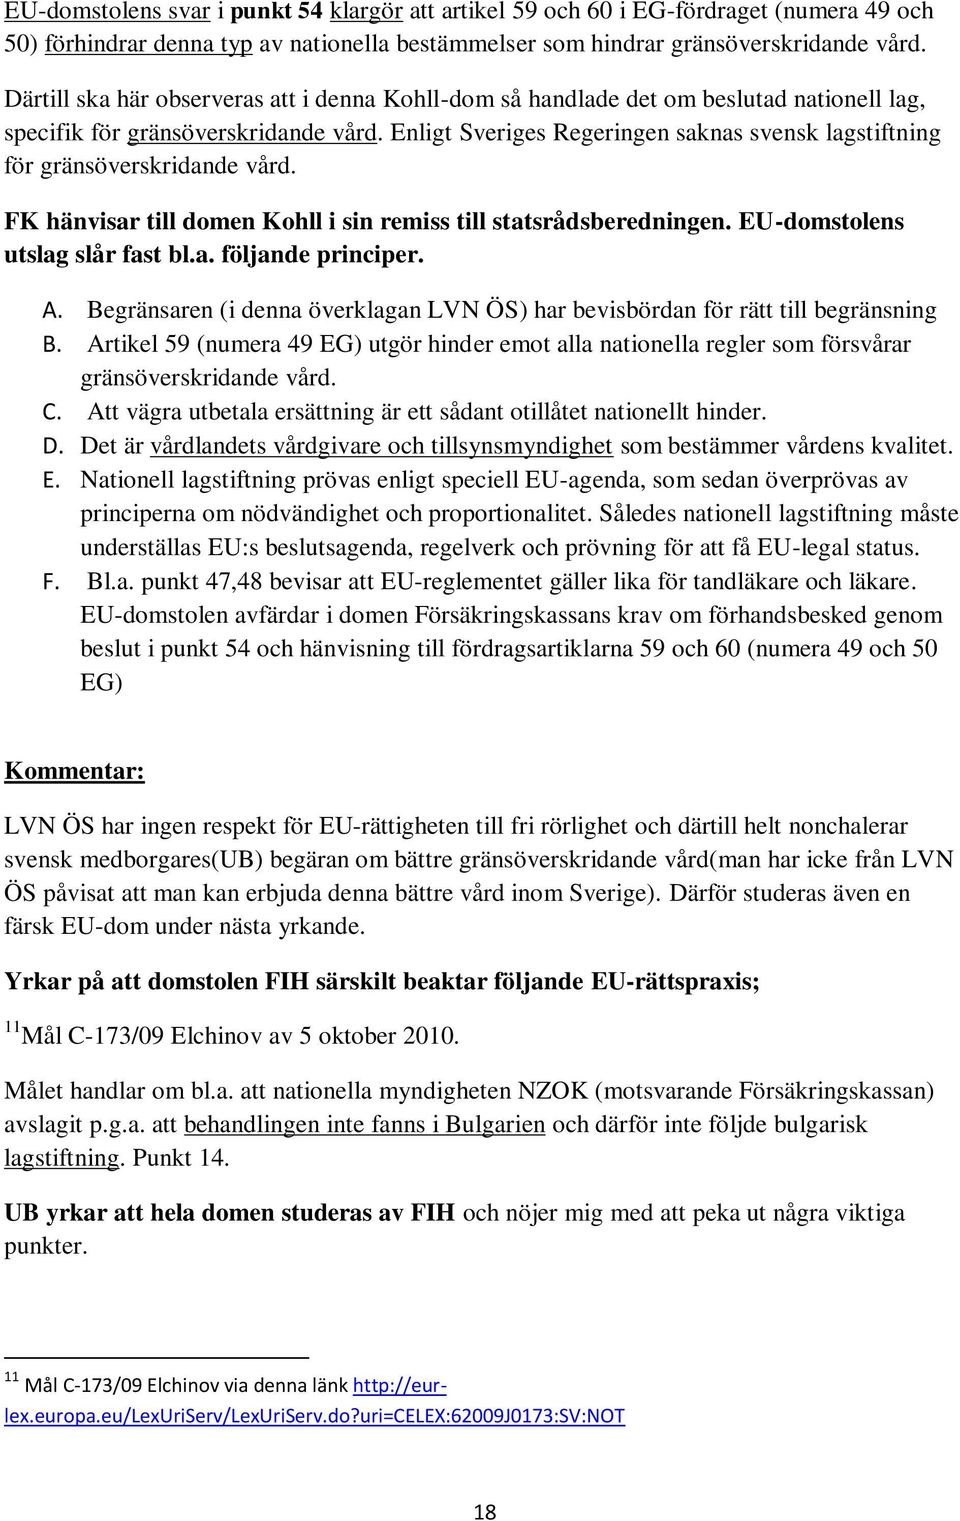 Enligt Sveriges Regeringen saknas svensk lagstiftning för gränsöverskridande vård. FK hänvisar till domen Kohll i sin remiss till statsrådsberedningen. EU-domstolens utslag slår fast bl.a. följande principer.